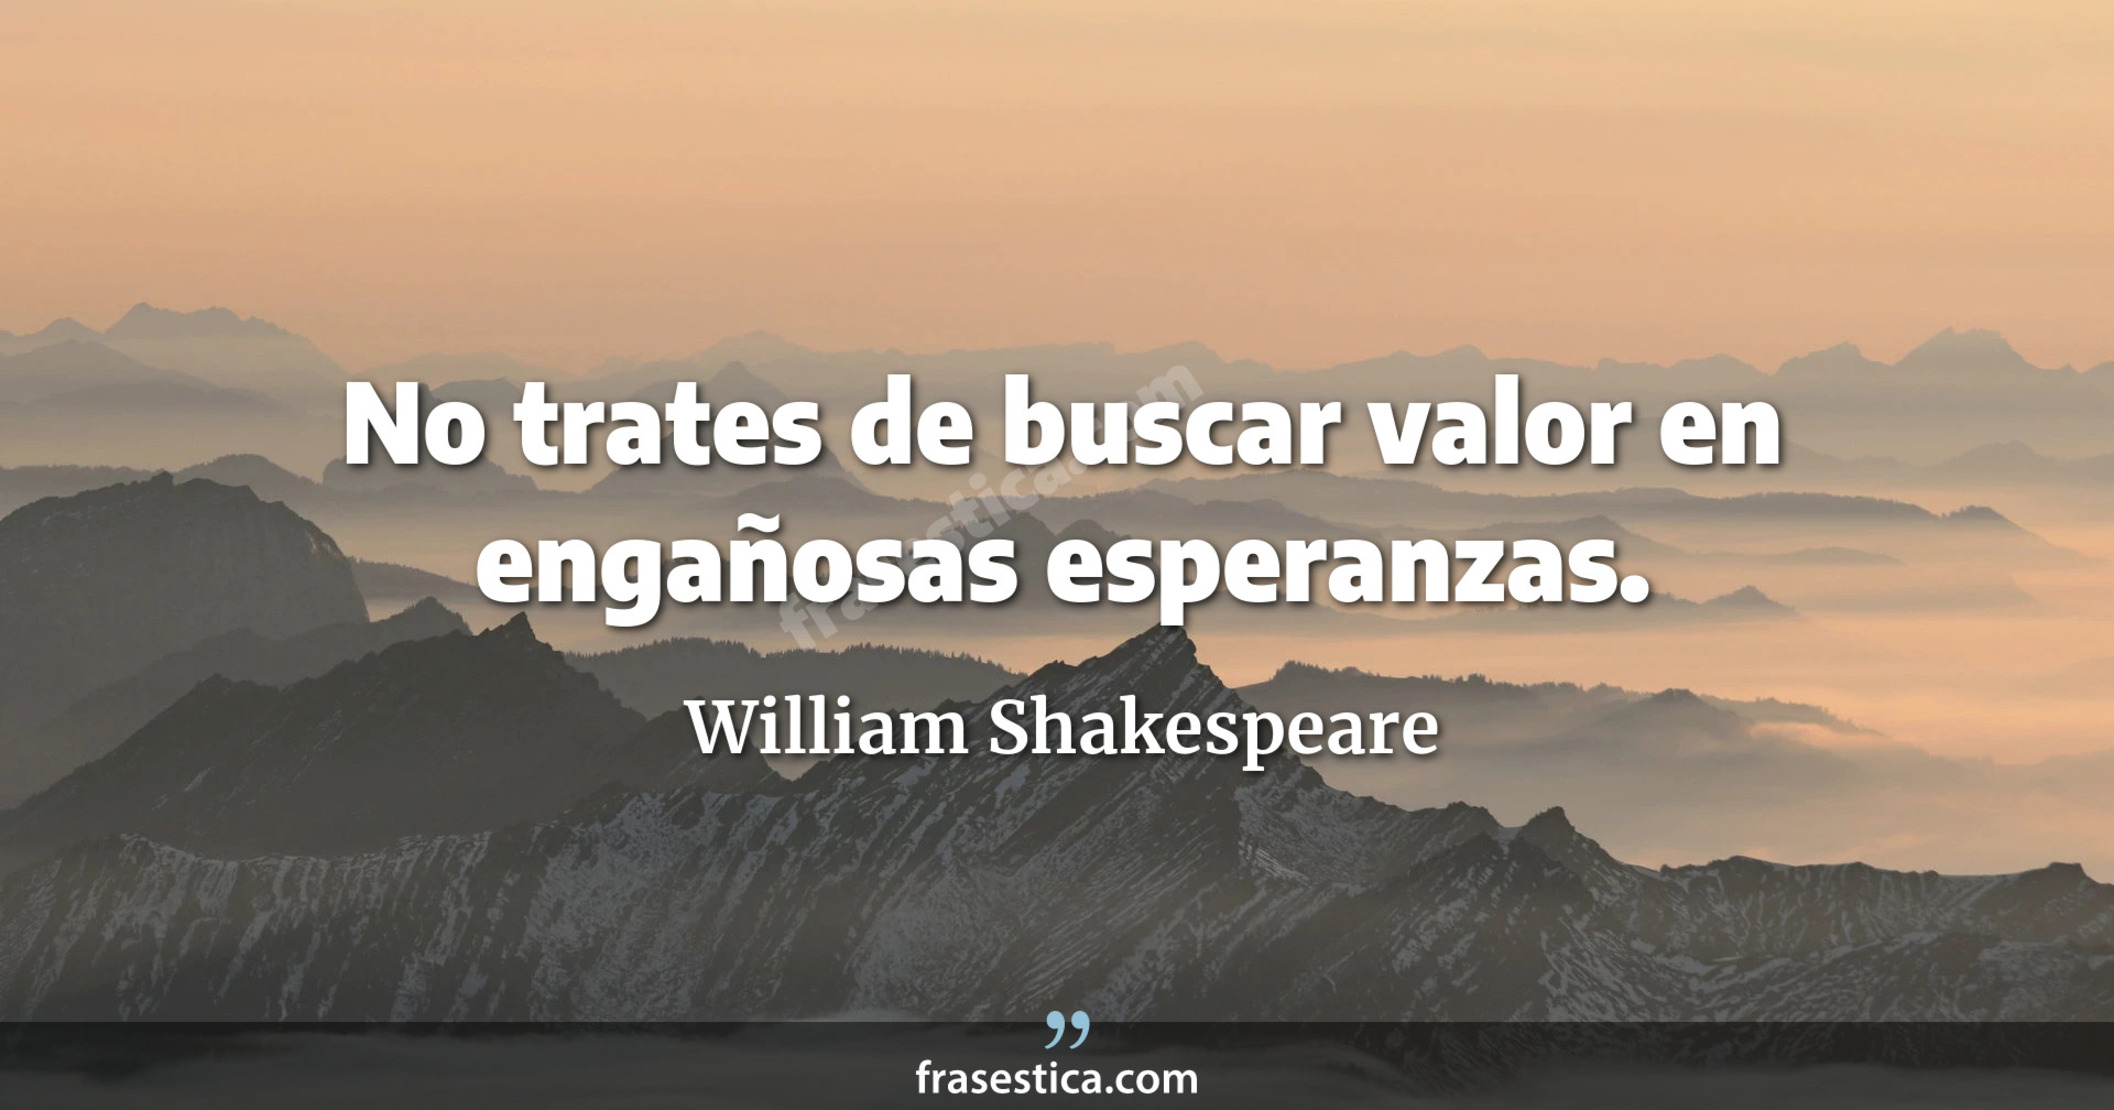 No trates de buscar valor en engañosas esperanzas. - William Shakespeare